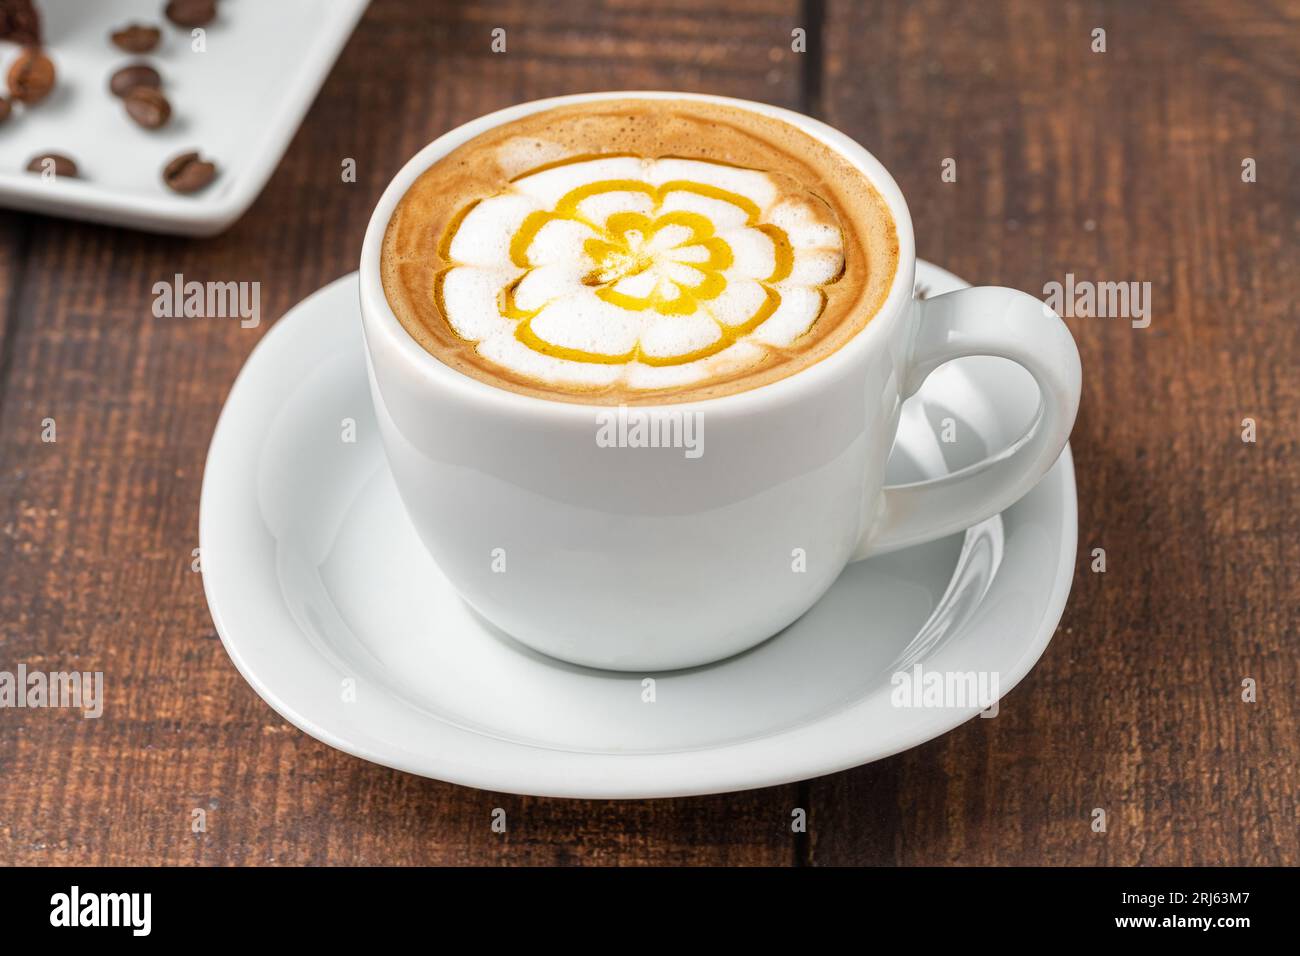 Café cappuccino à motifs dans une tasse en porcelaine blanche sur une table en bois Banque D'Images